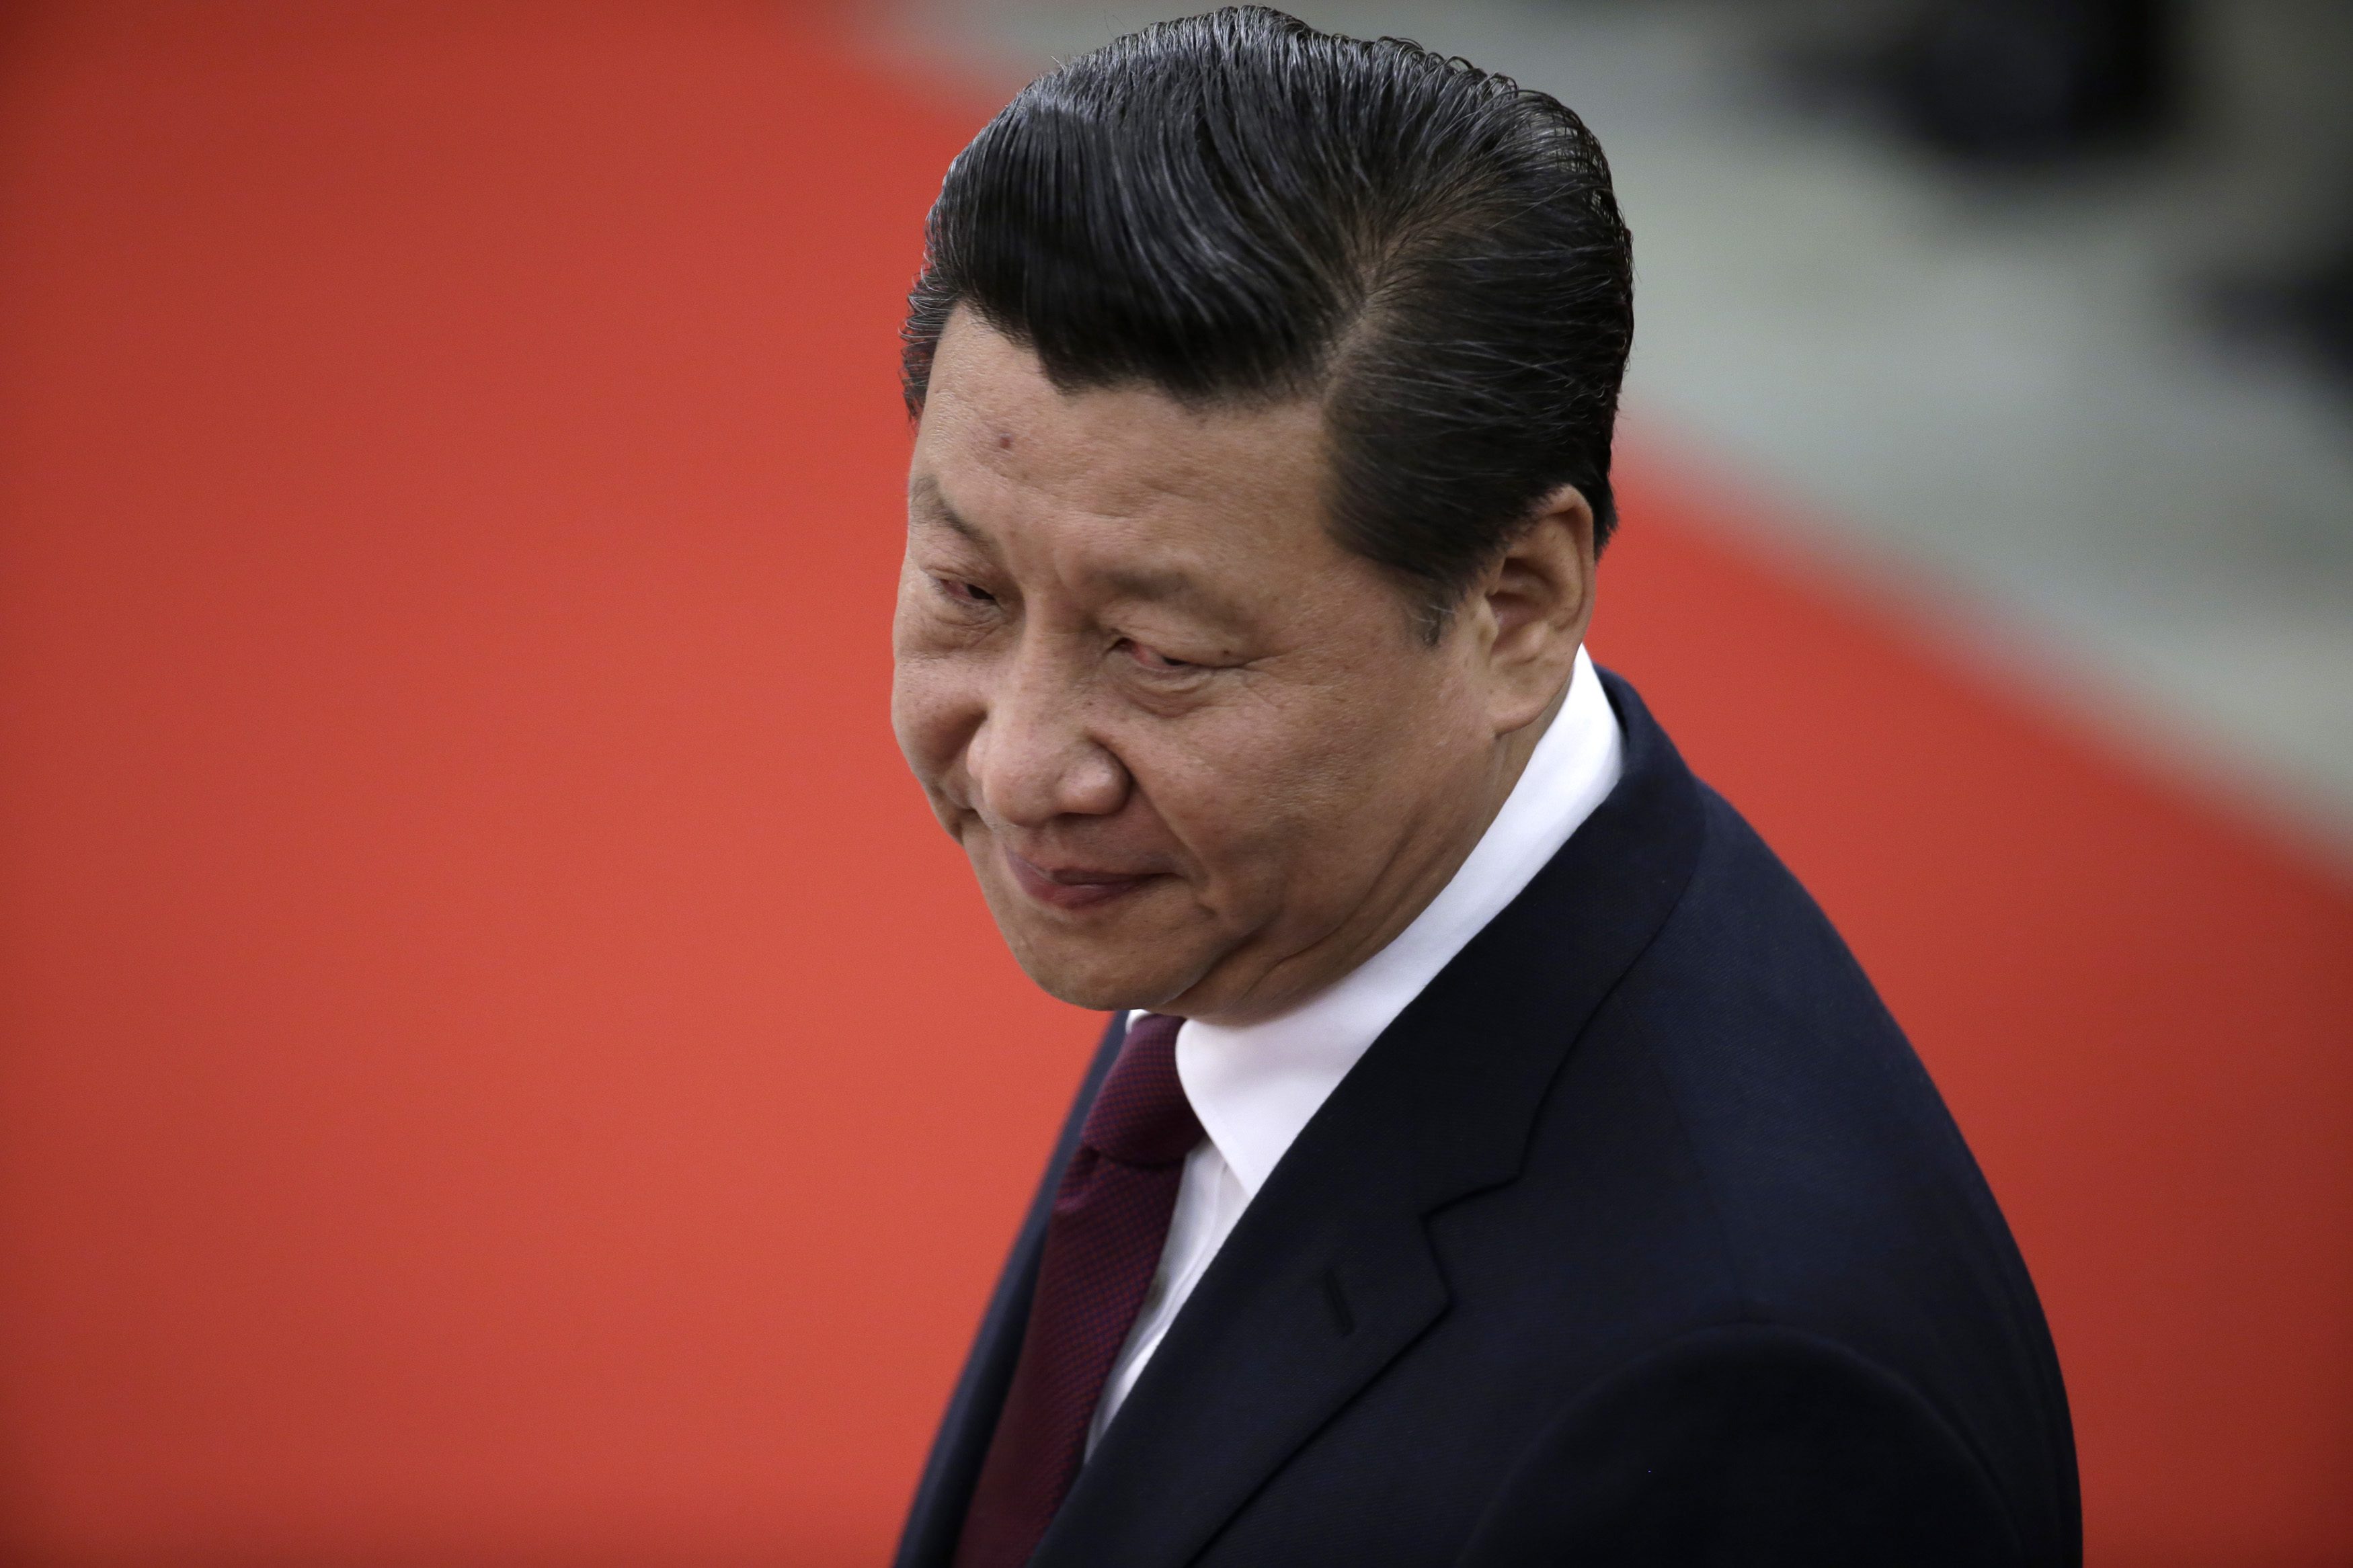 Cómo funciona la “gran muralla digital” impuesta por la censura de Xi Jinping (VIDEO)